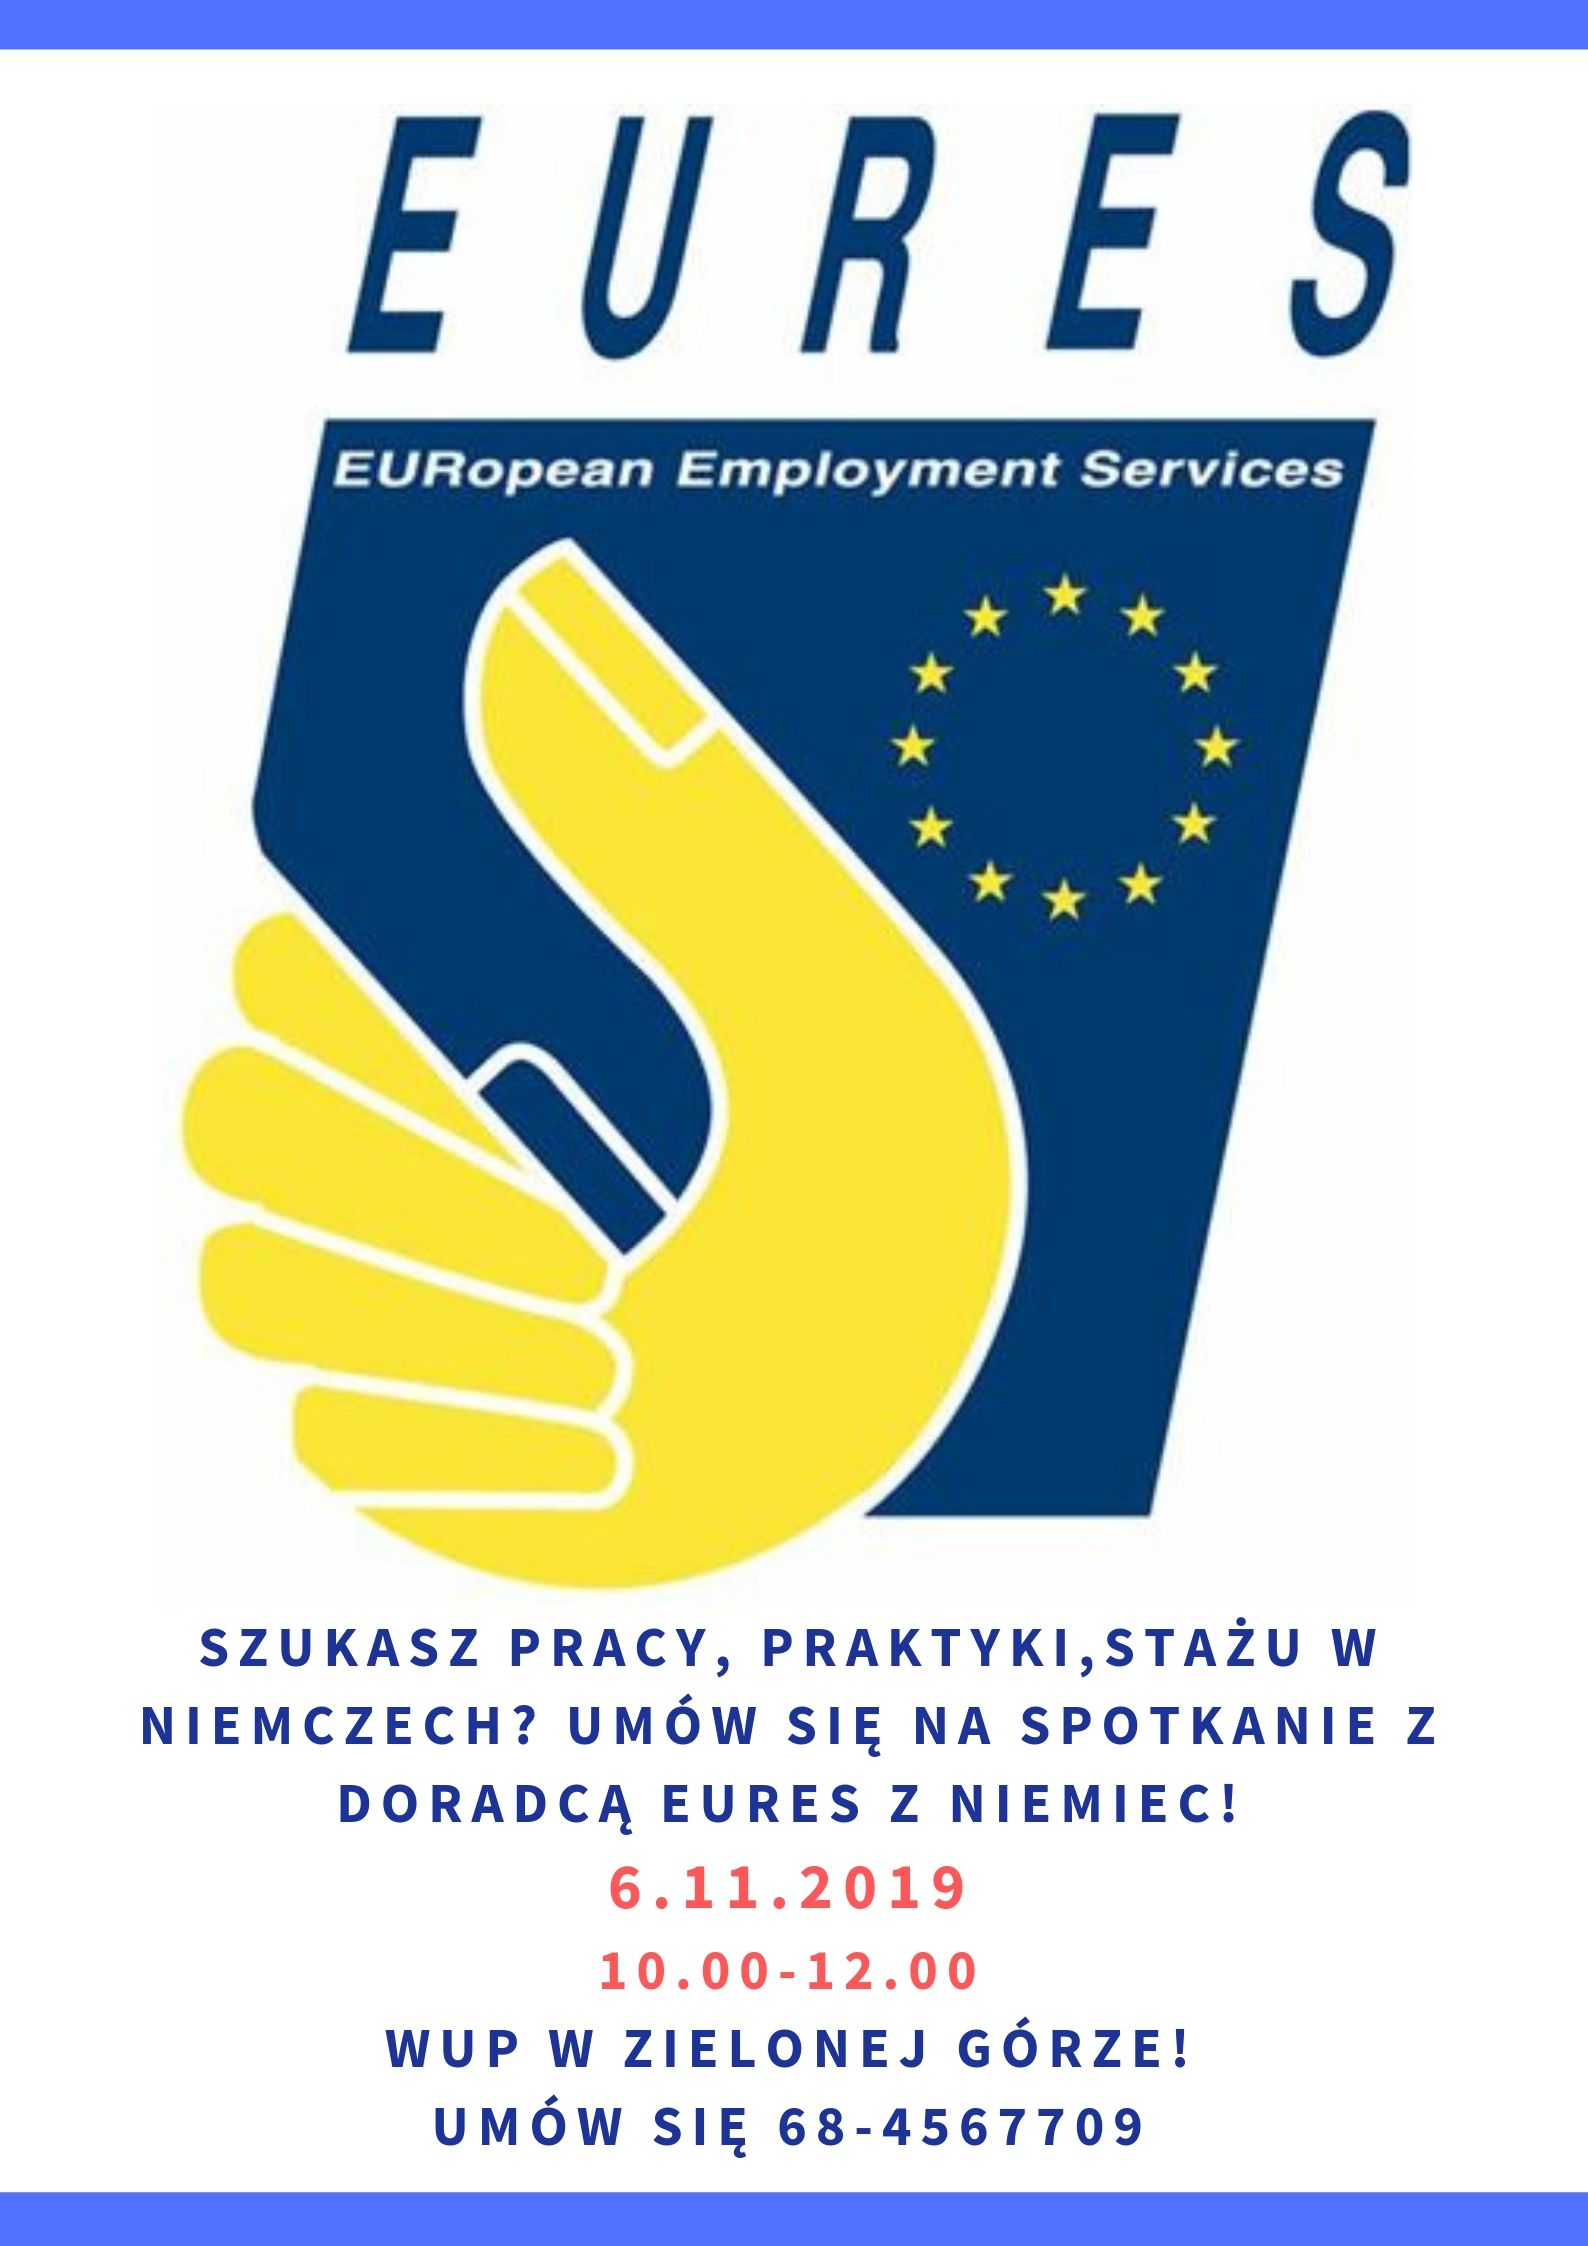 Plakat z logo eures oraz informacjami odnośnie spotkania dostępnymi w artykule